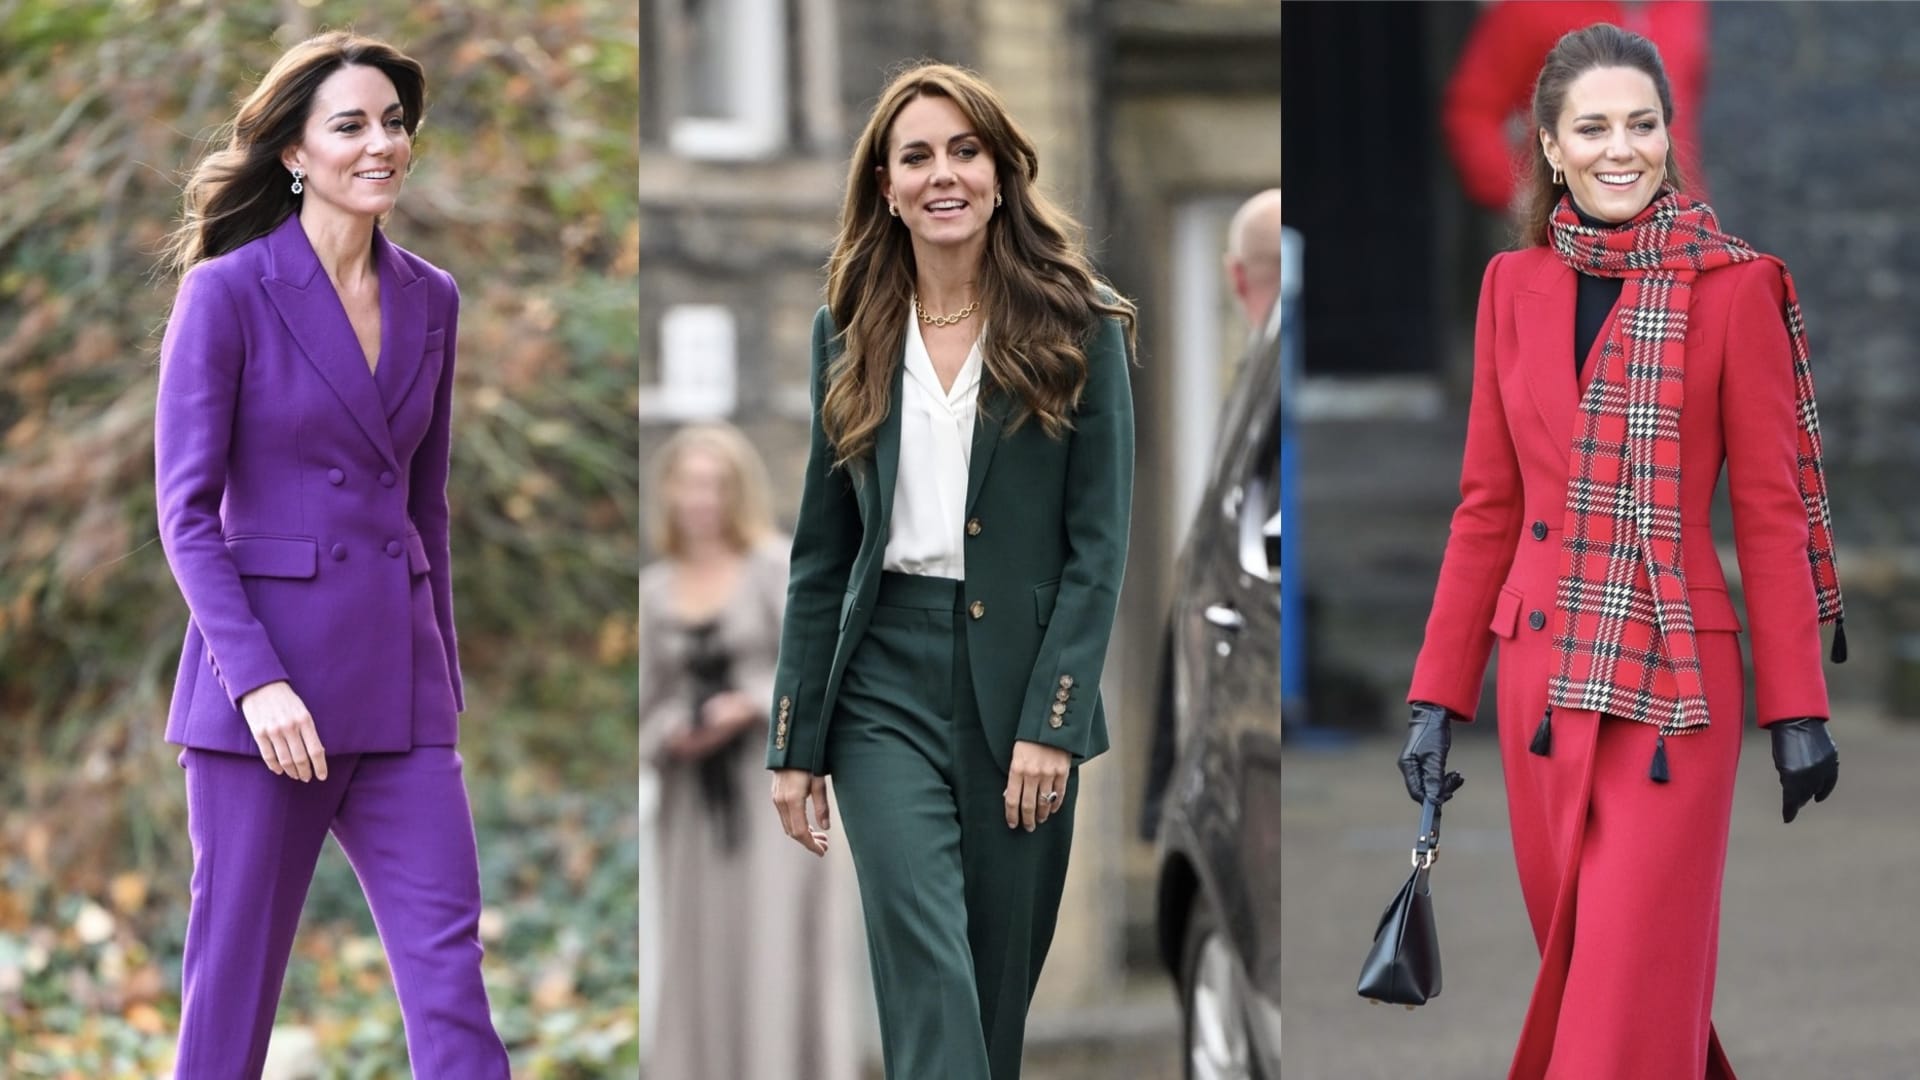 Podívejte se, na jaké módní kousky nedá Kate Middleton dopustit.